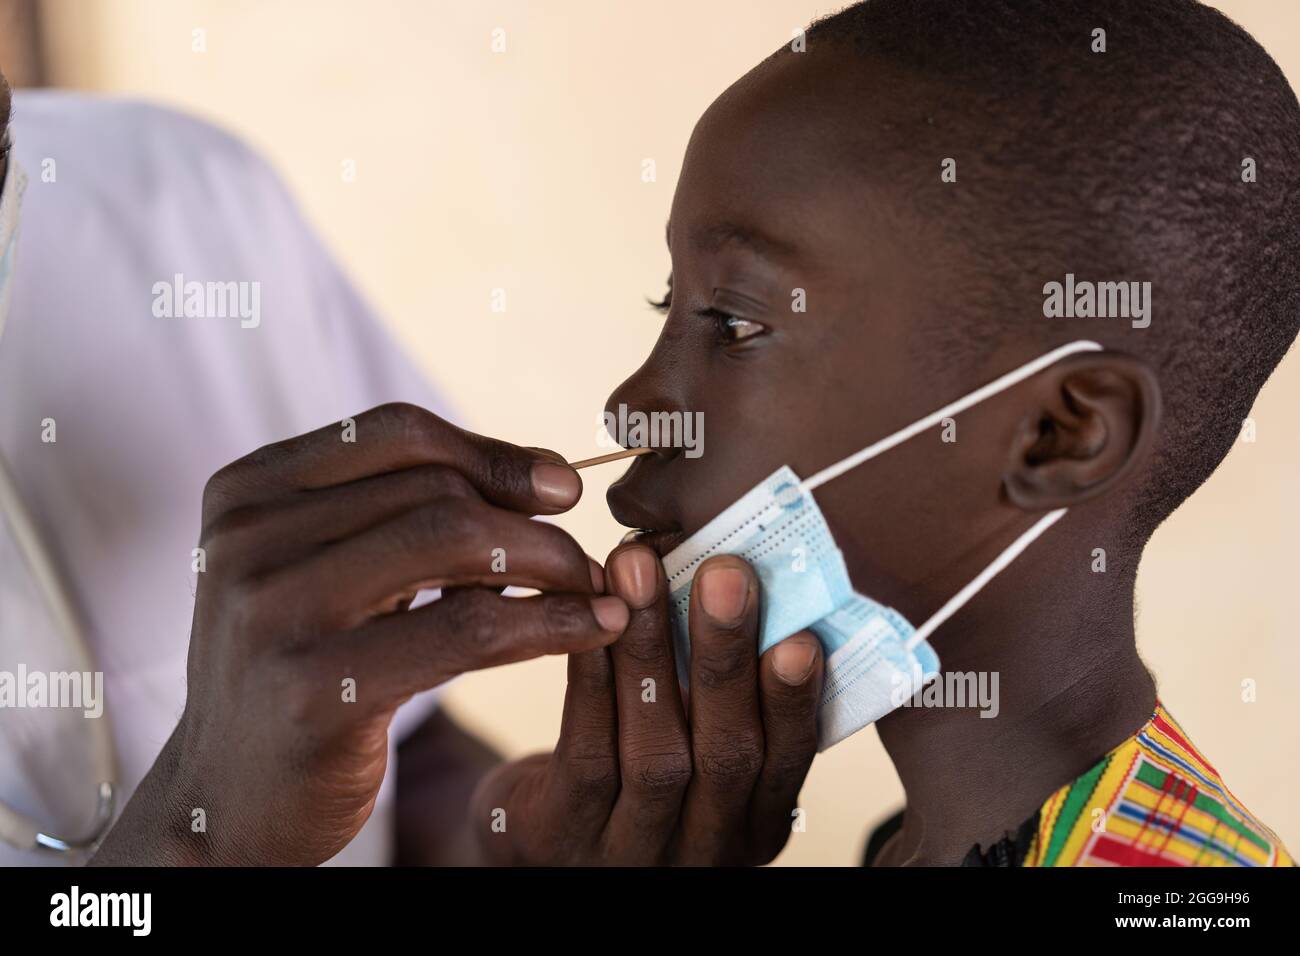 Primo piano di uno scolaro nero sottoposto a test con tampone nasale durante lo screening della corona in una scuola africana Foto Stock